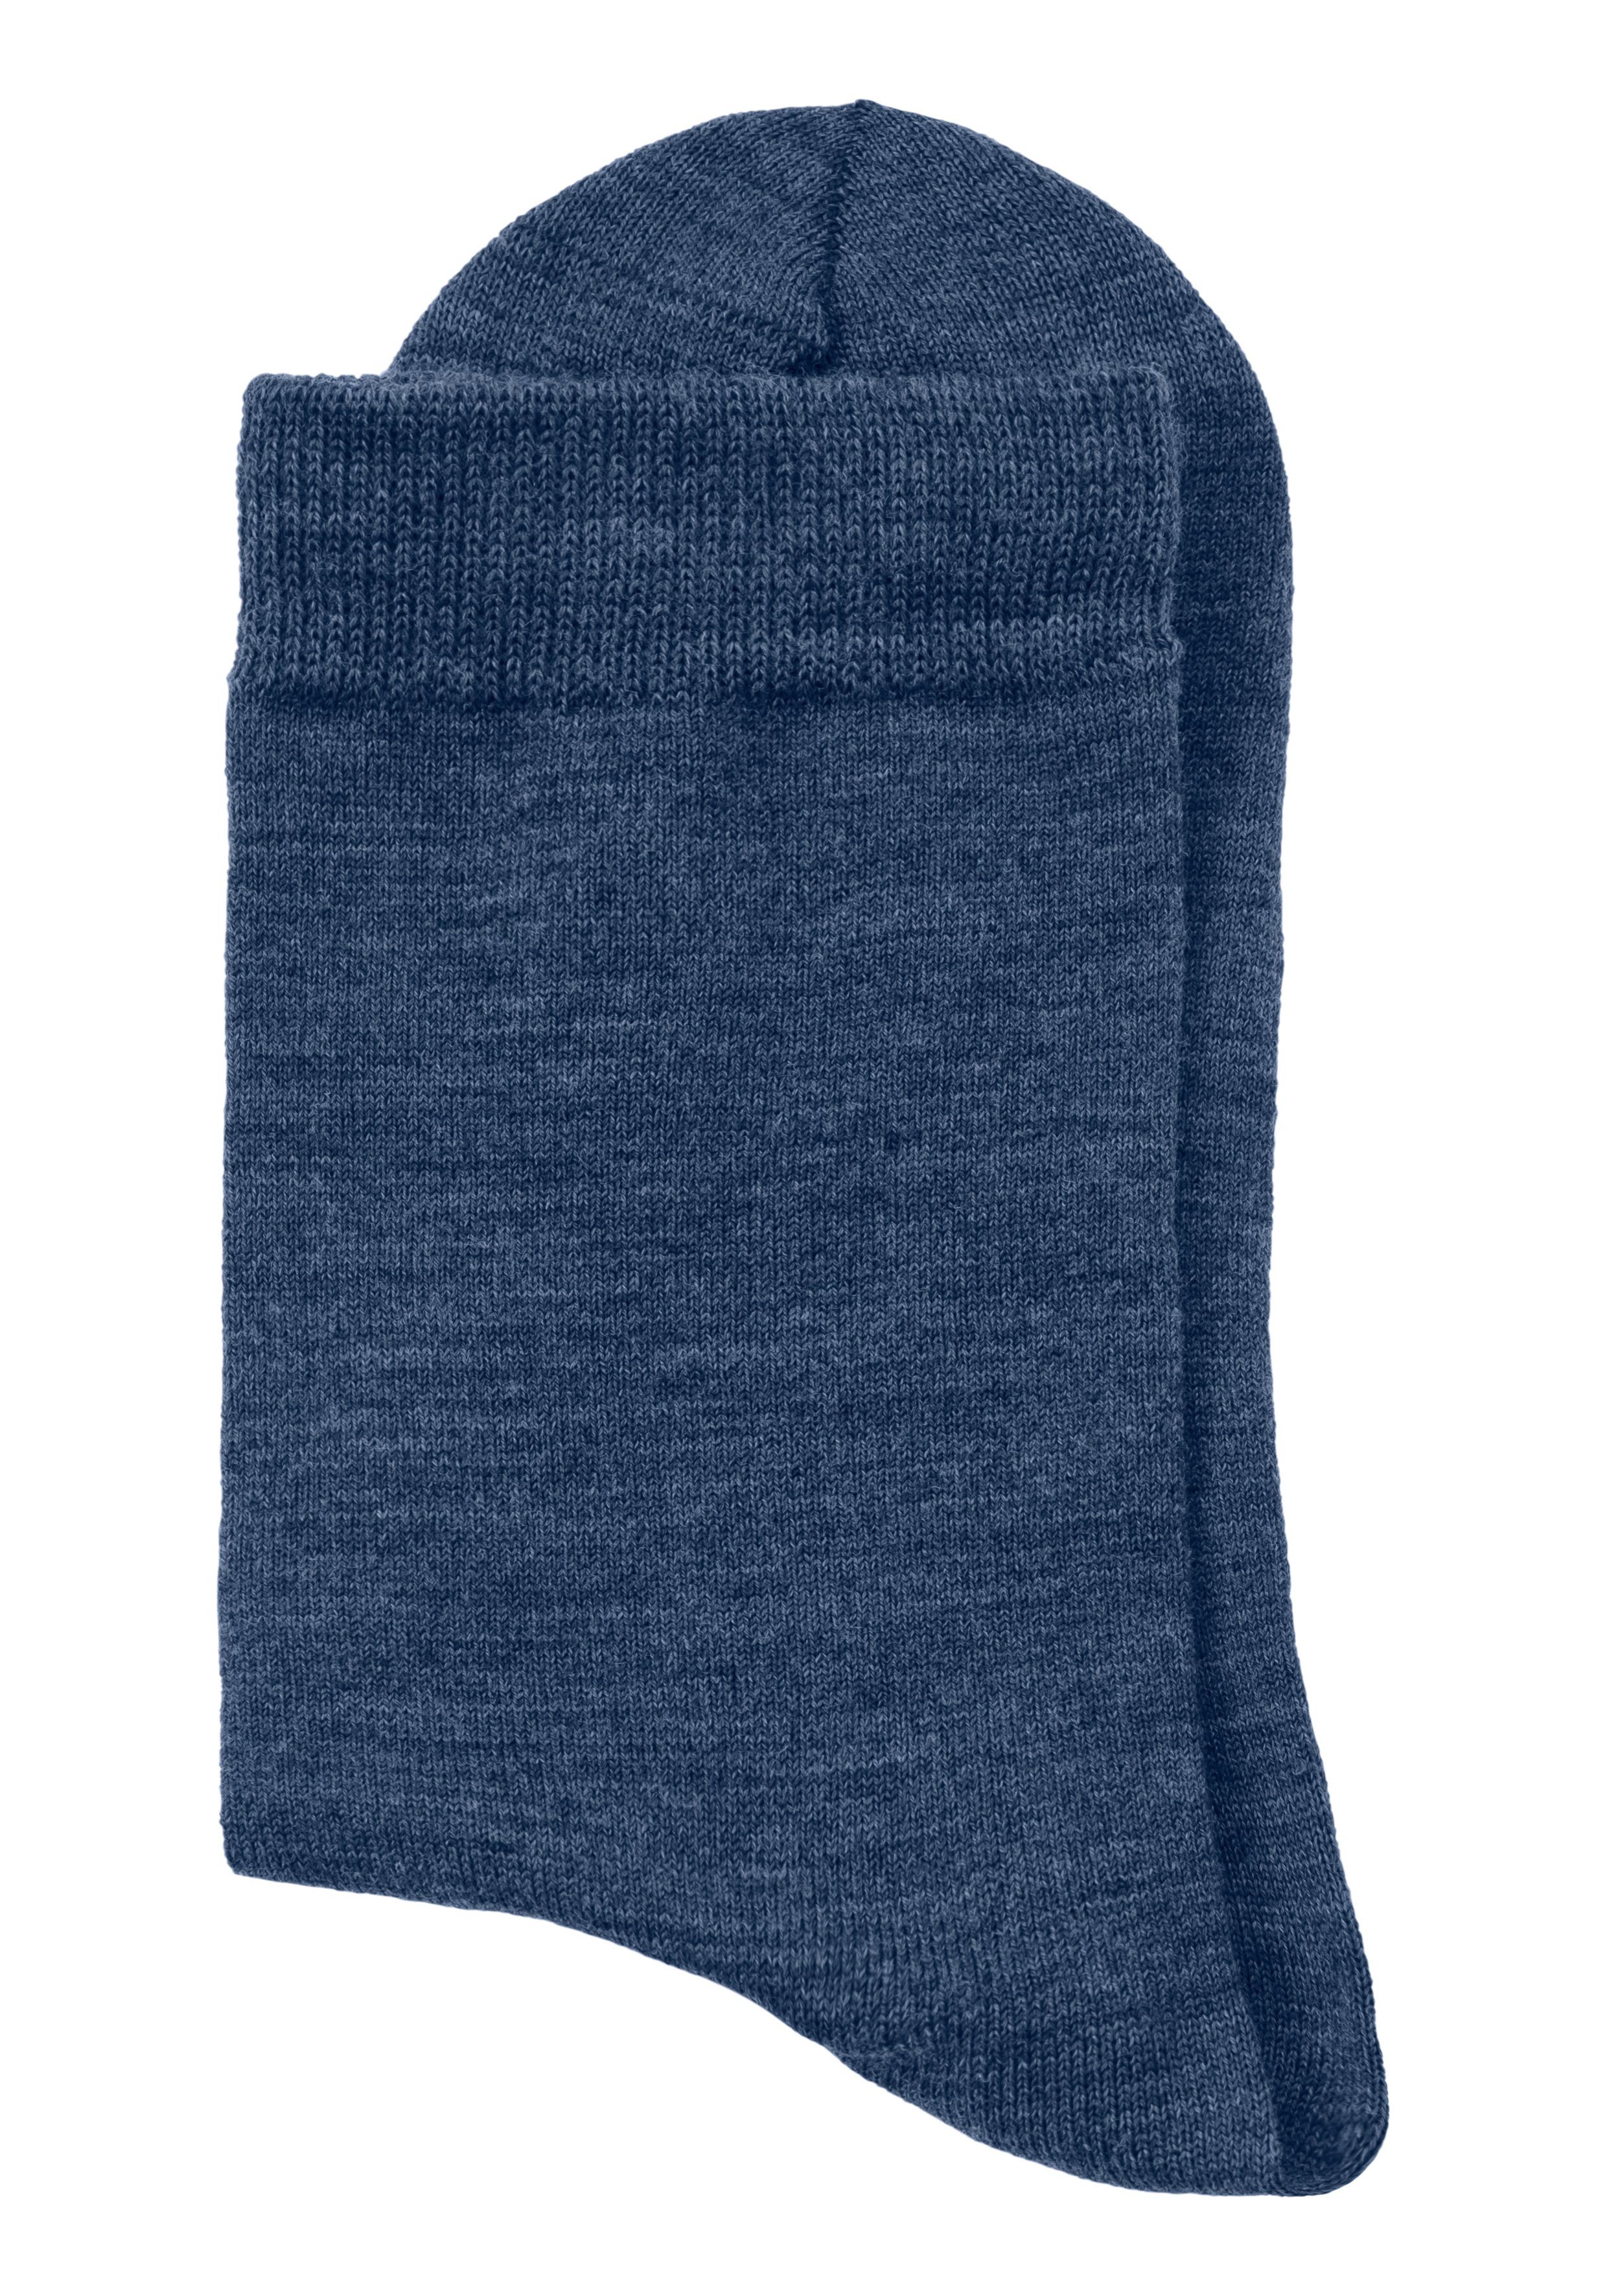 Bench. 2x Socken Material aus flauschigem jeans 1x navy, Wollsocken (3-Paar)